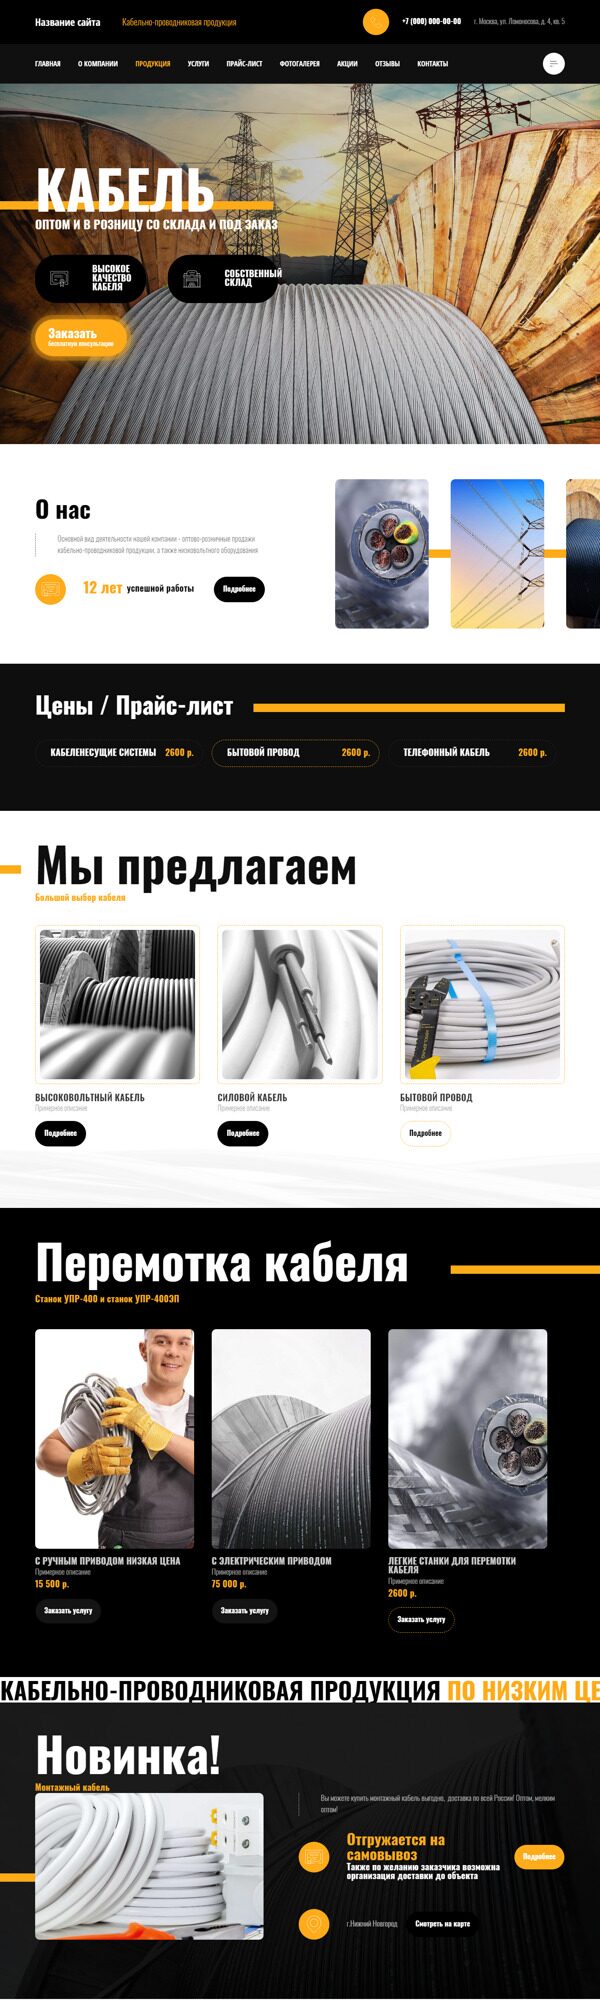 Готовый Сайт-Бизнес № 4712159 - Кабельно-проводниковая продукция (Десктопная версия)